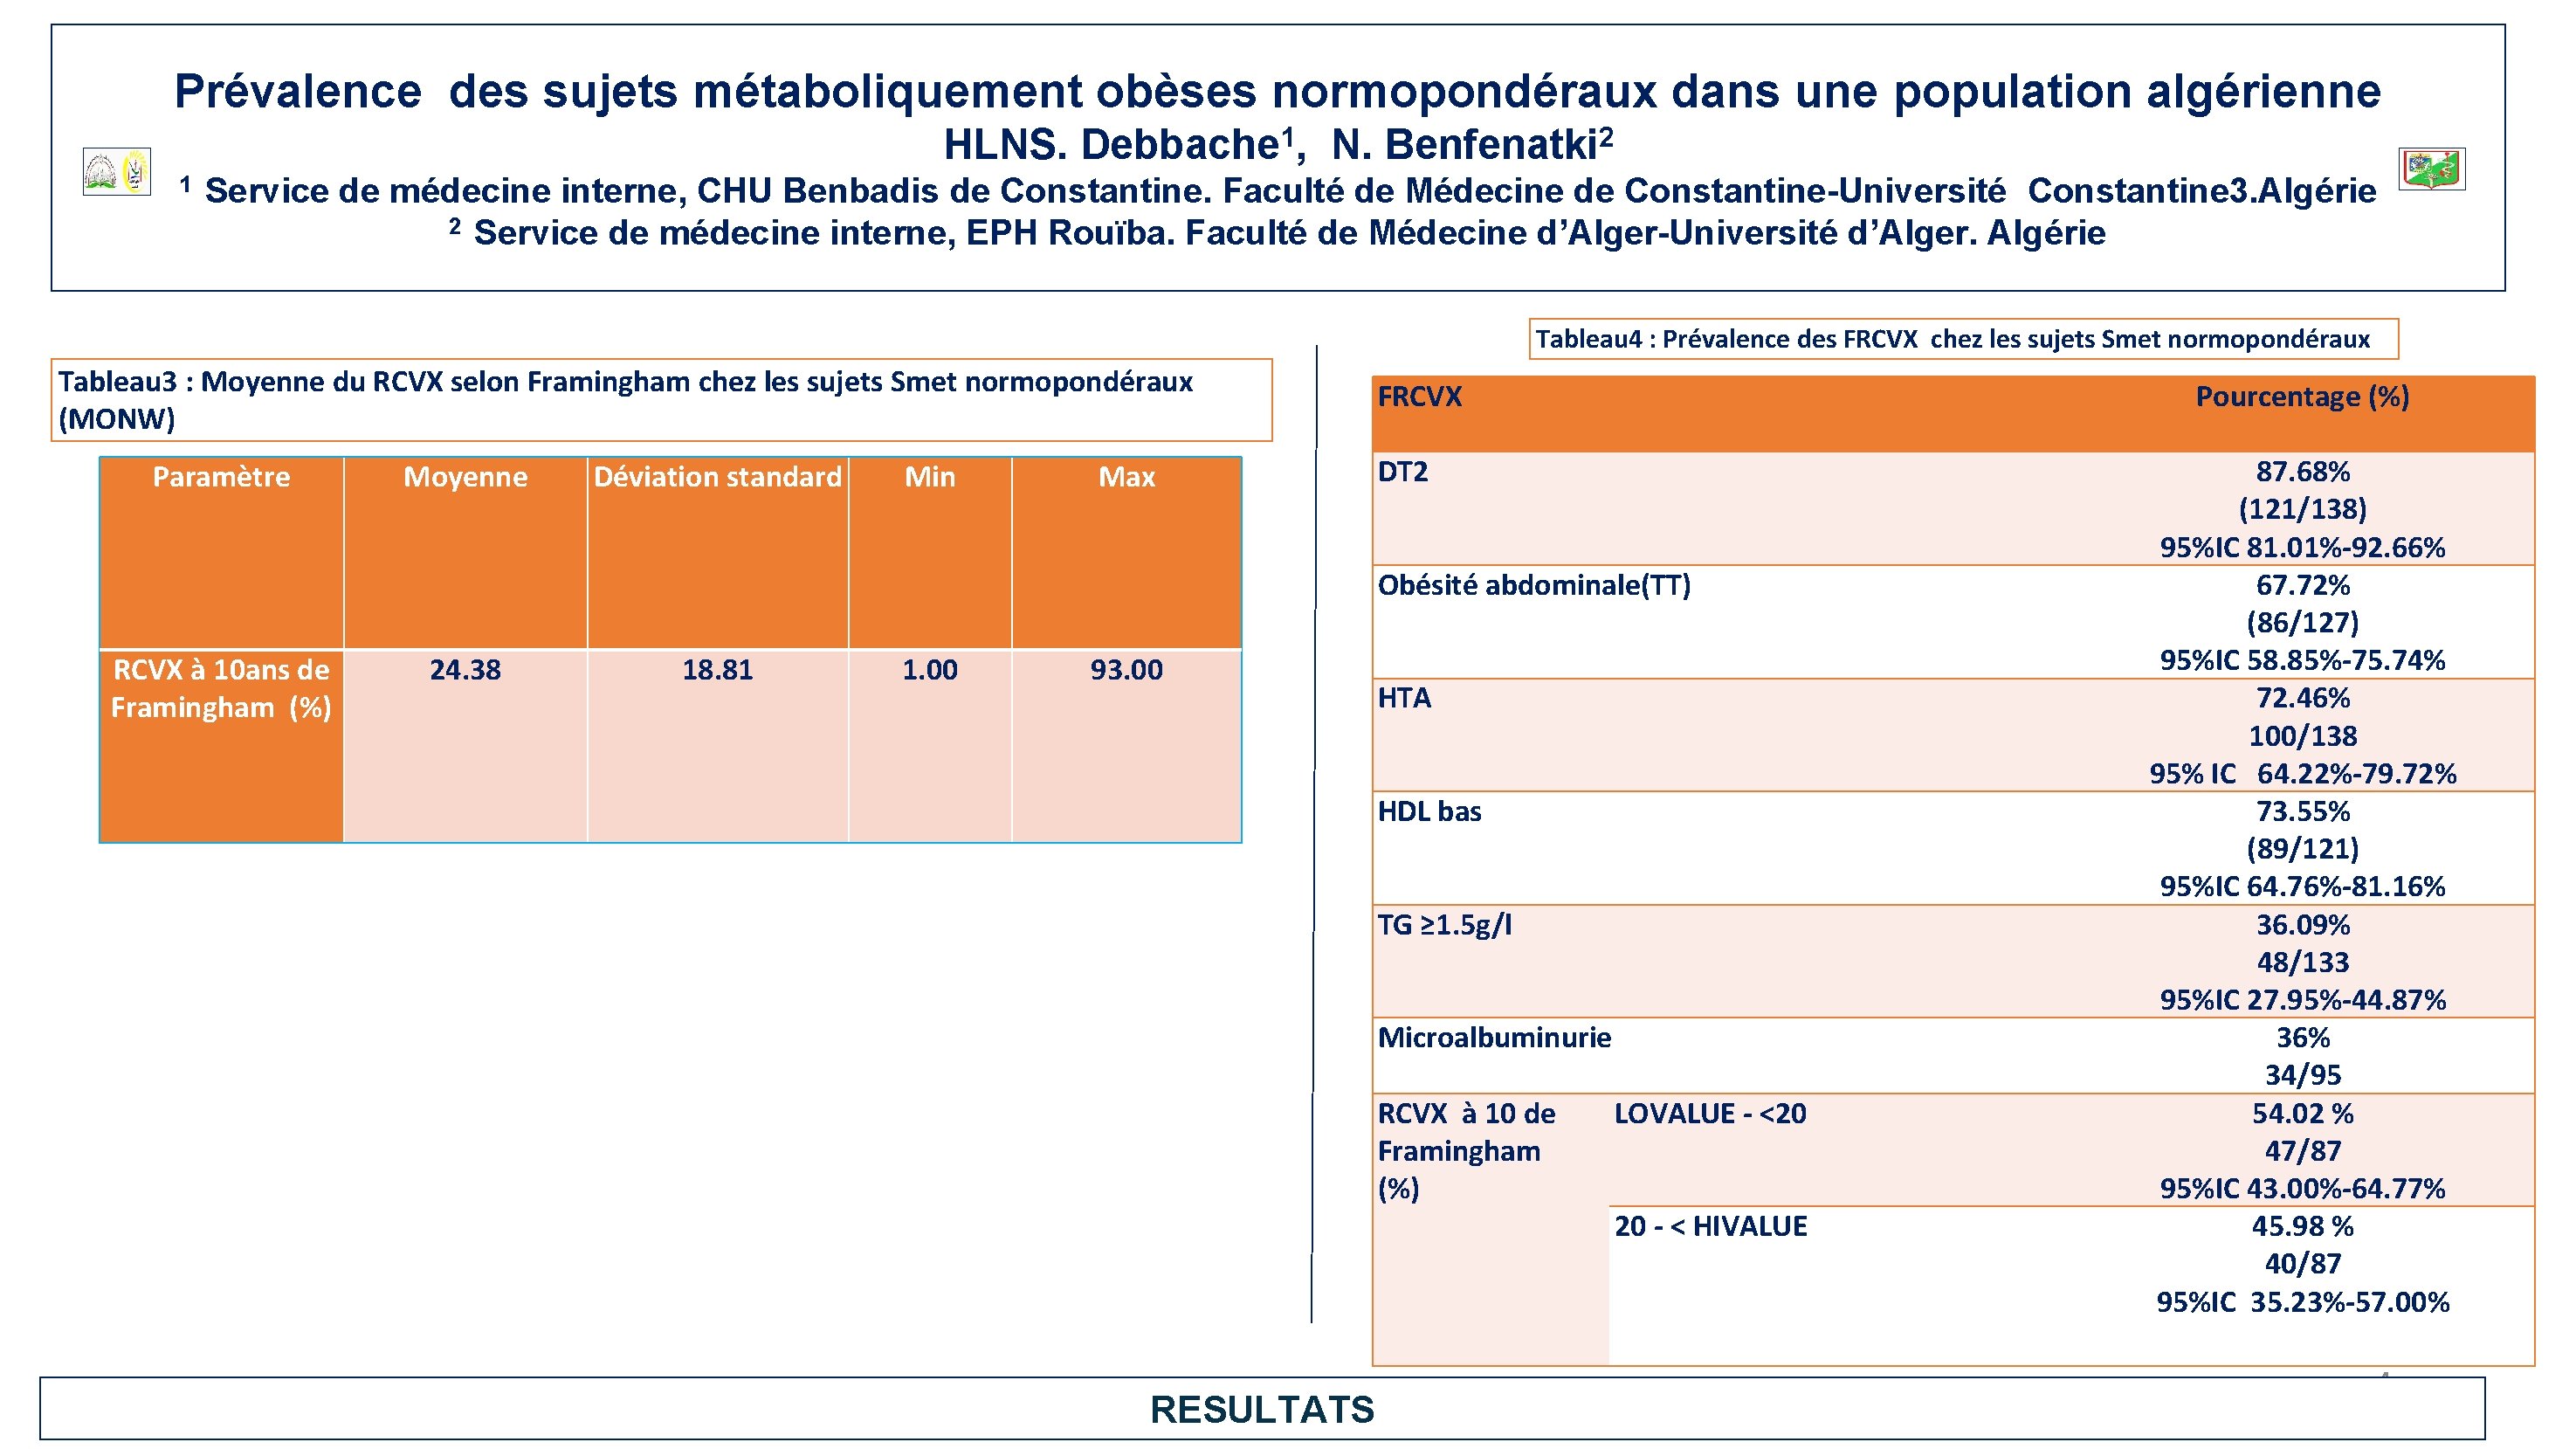 Prévalence des sujets métaboliquement obèses normopondéraux dans une population algérienne HLNS. 1 1 Debbache